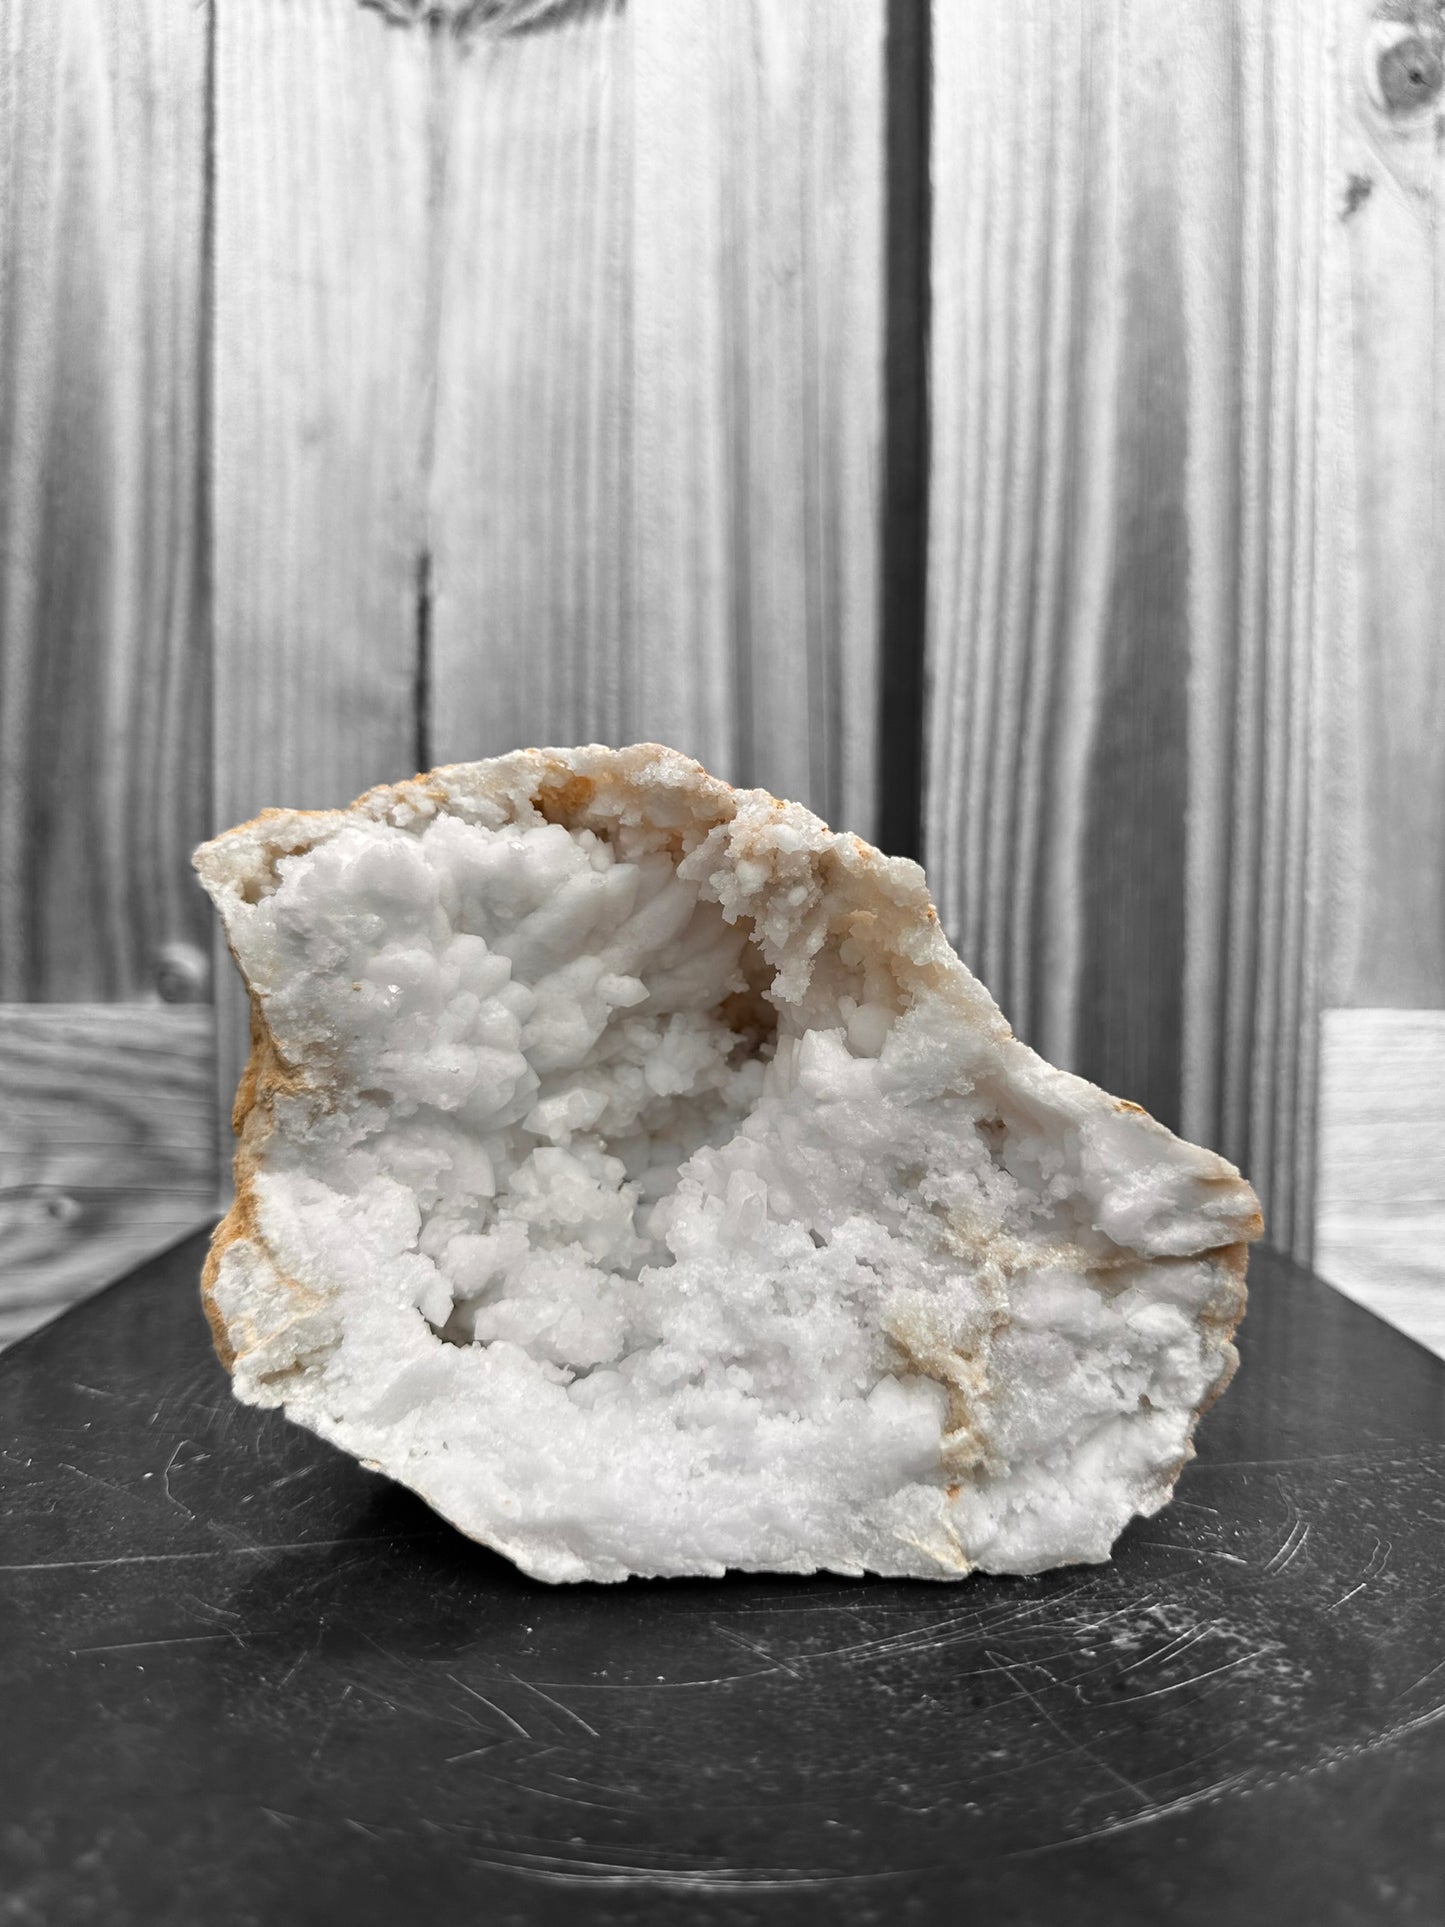 Bergkristal Geode